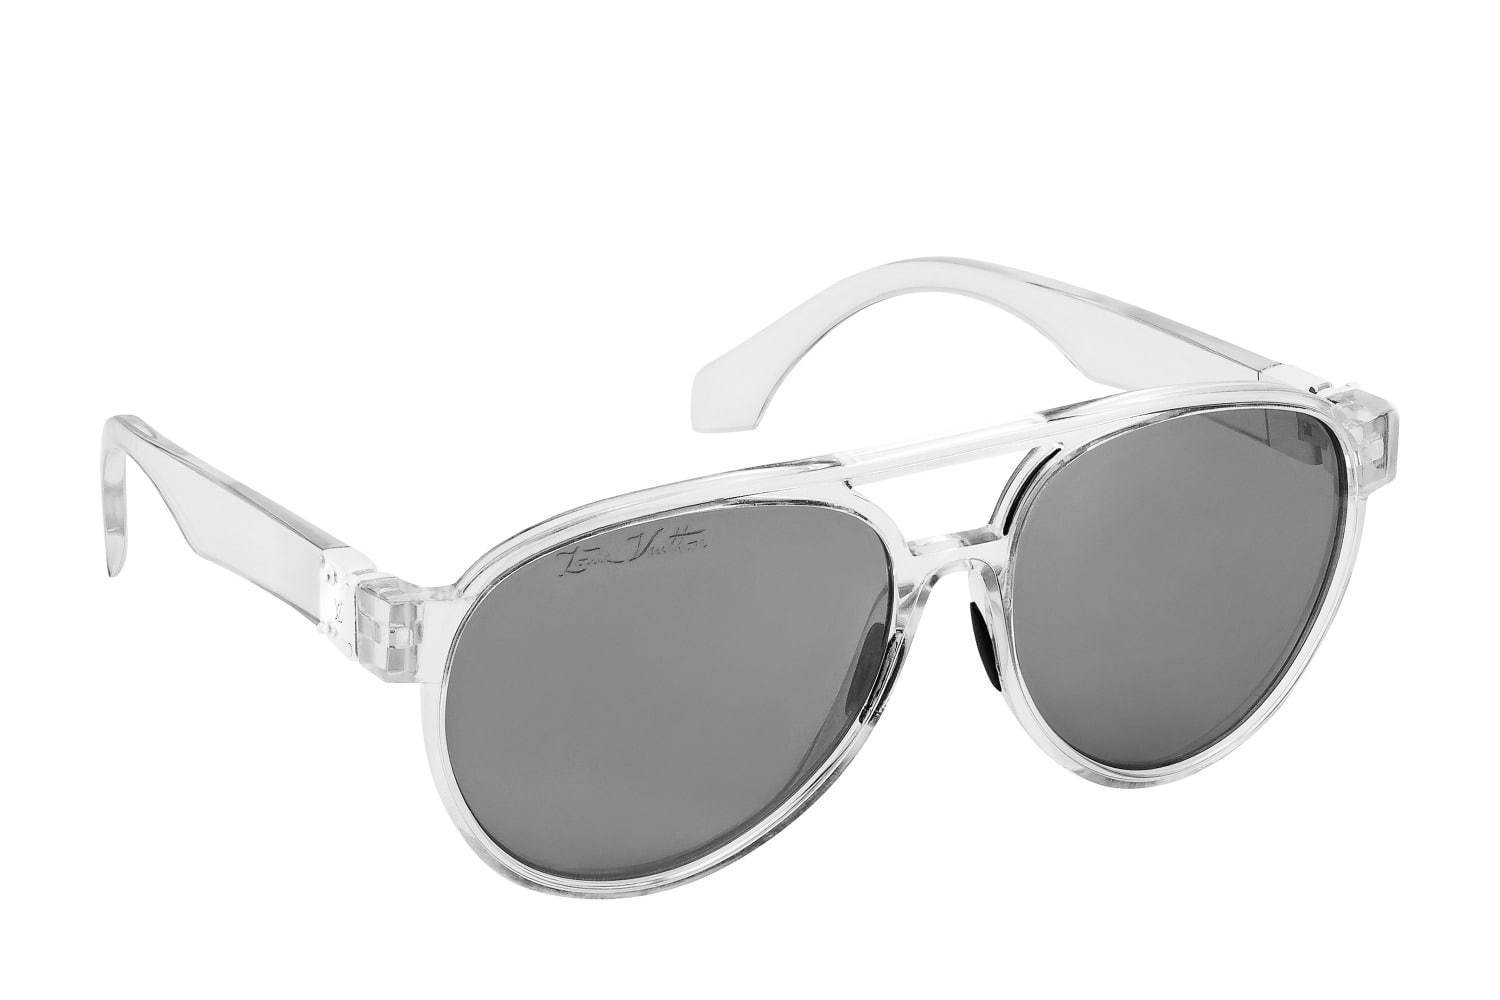 ルイ・ヴィトンの新作メンズサングラス「LVレインボー」グラデーション